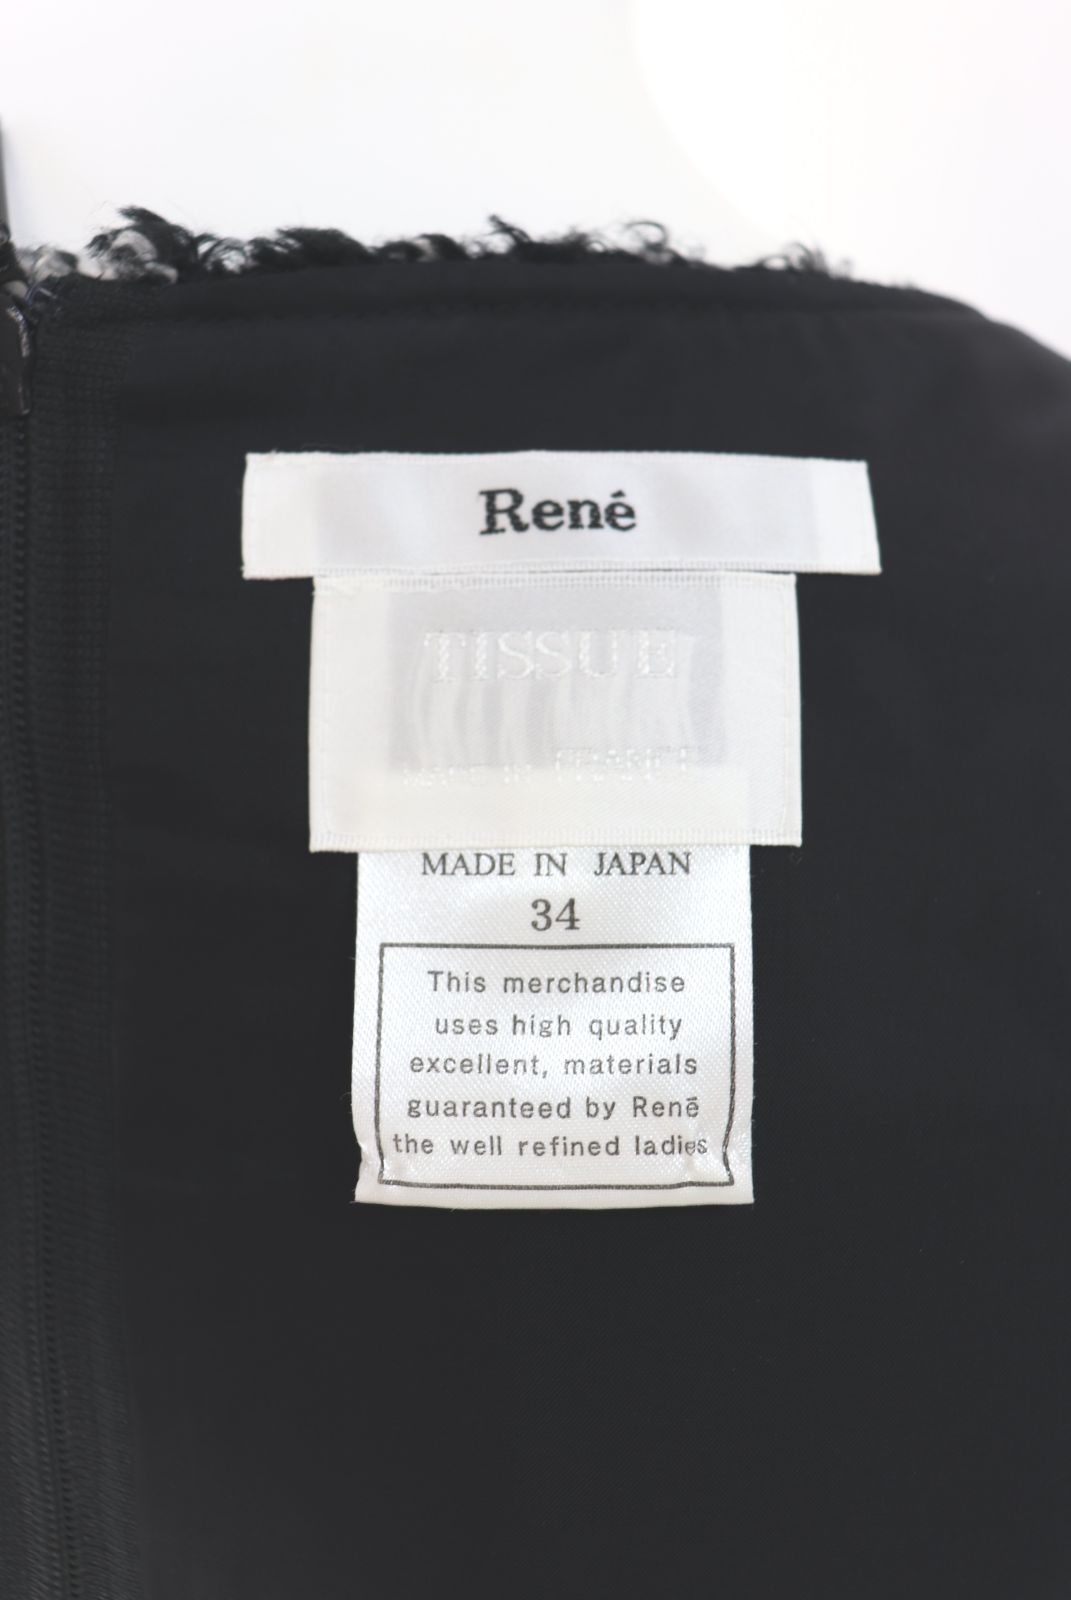 Rene☆ルネ フランス製ツイードワンピース 6846470 34サイズ - メルカリ